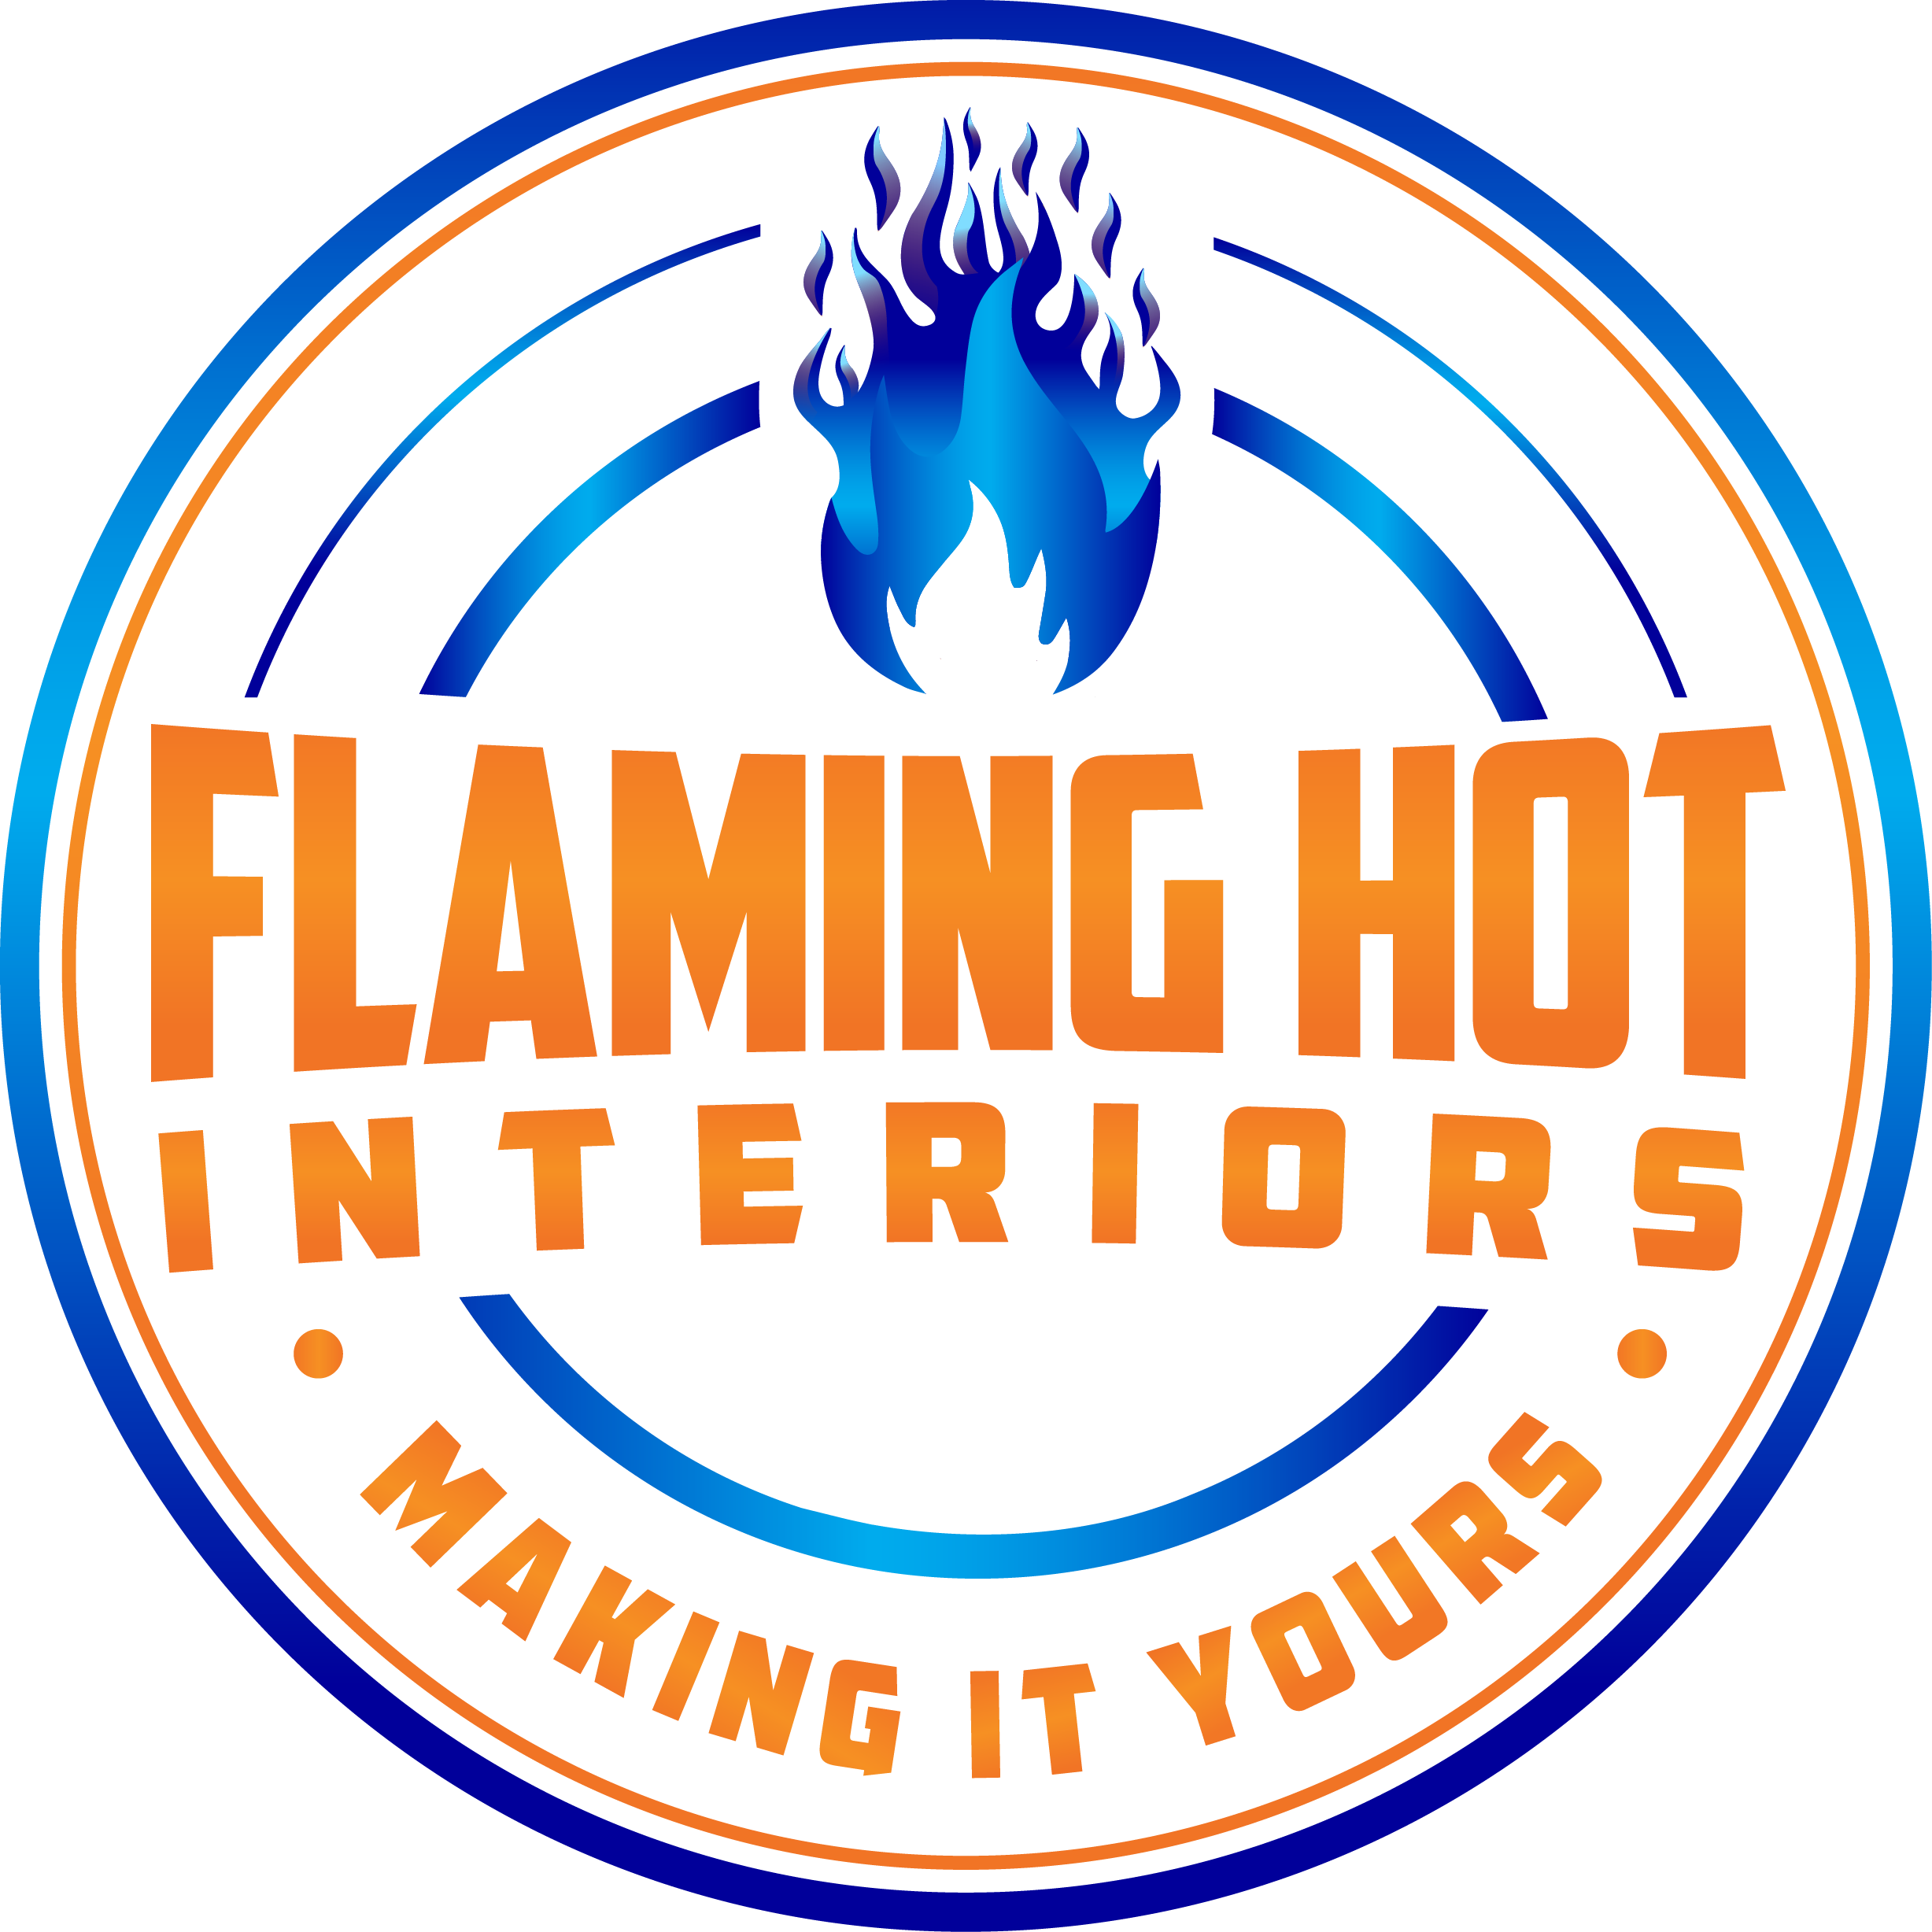 Flaming Hot Interiors logo